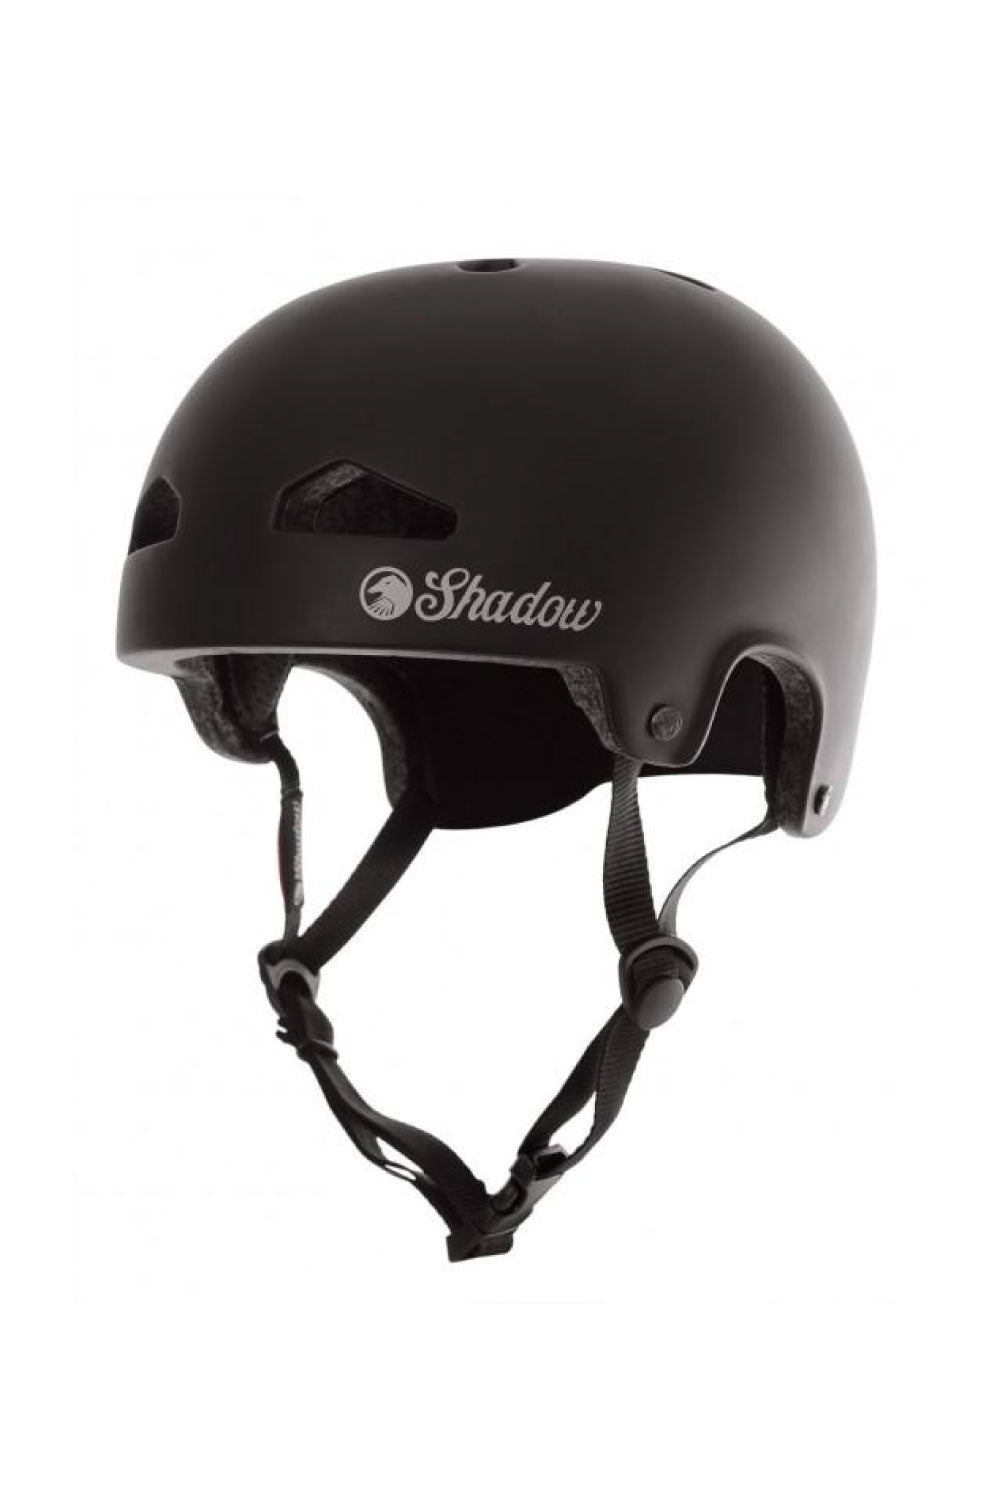 bmx cycle helmet